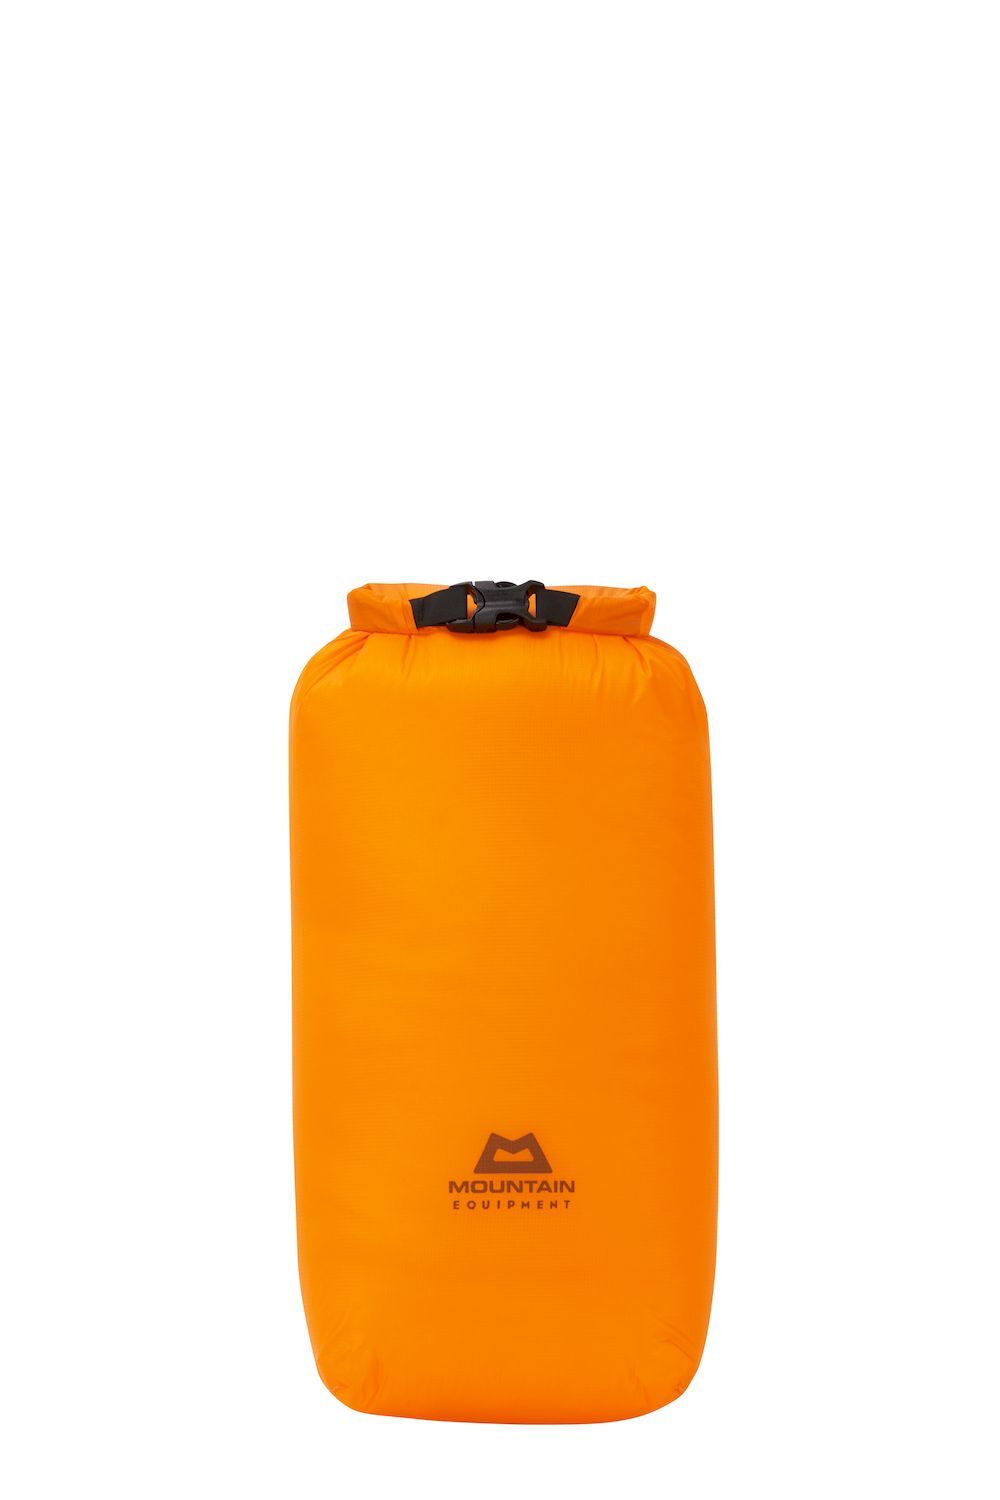 Mountain Equipment Lightweight Drybag 5L - Waterproof bag